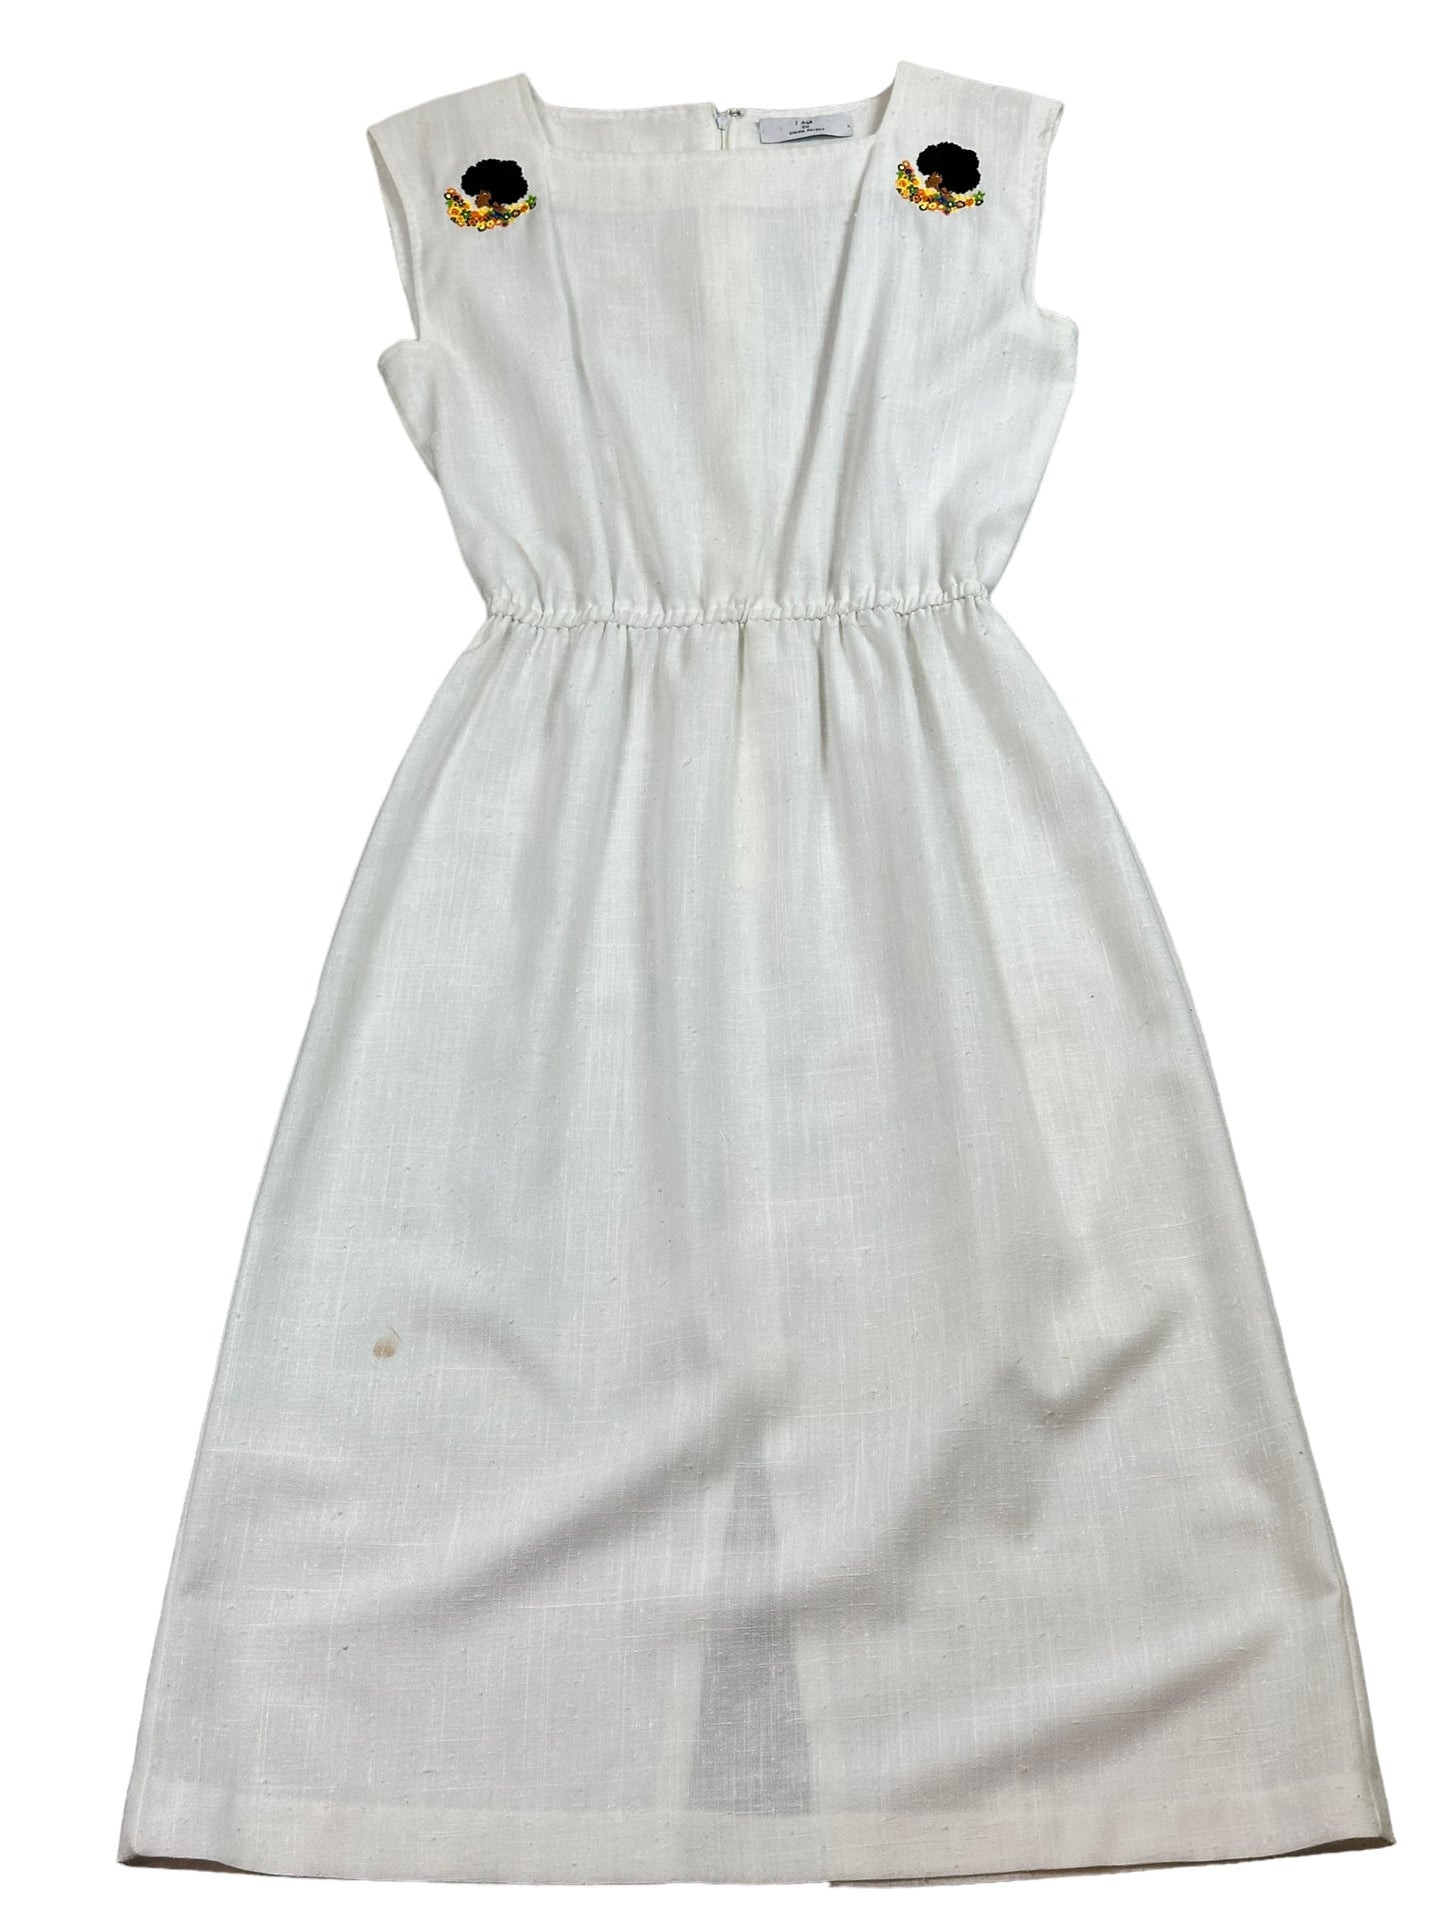 Kameo Upcycled White Shift Dress